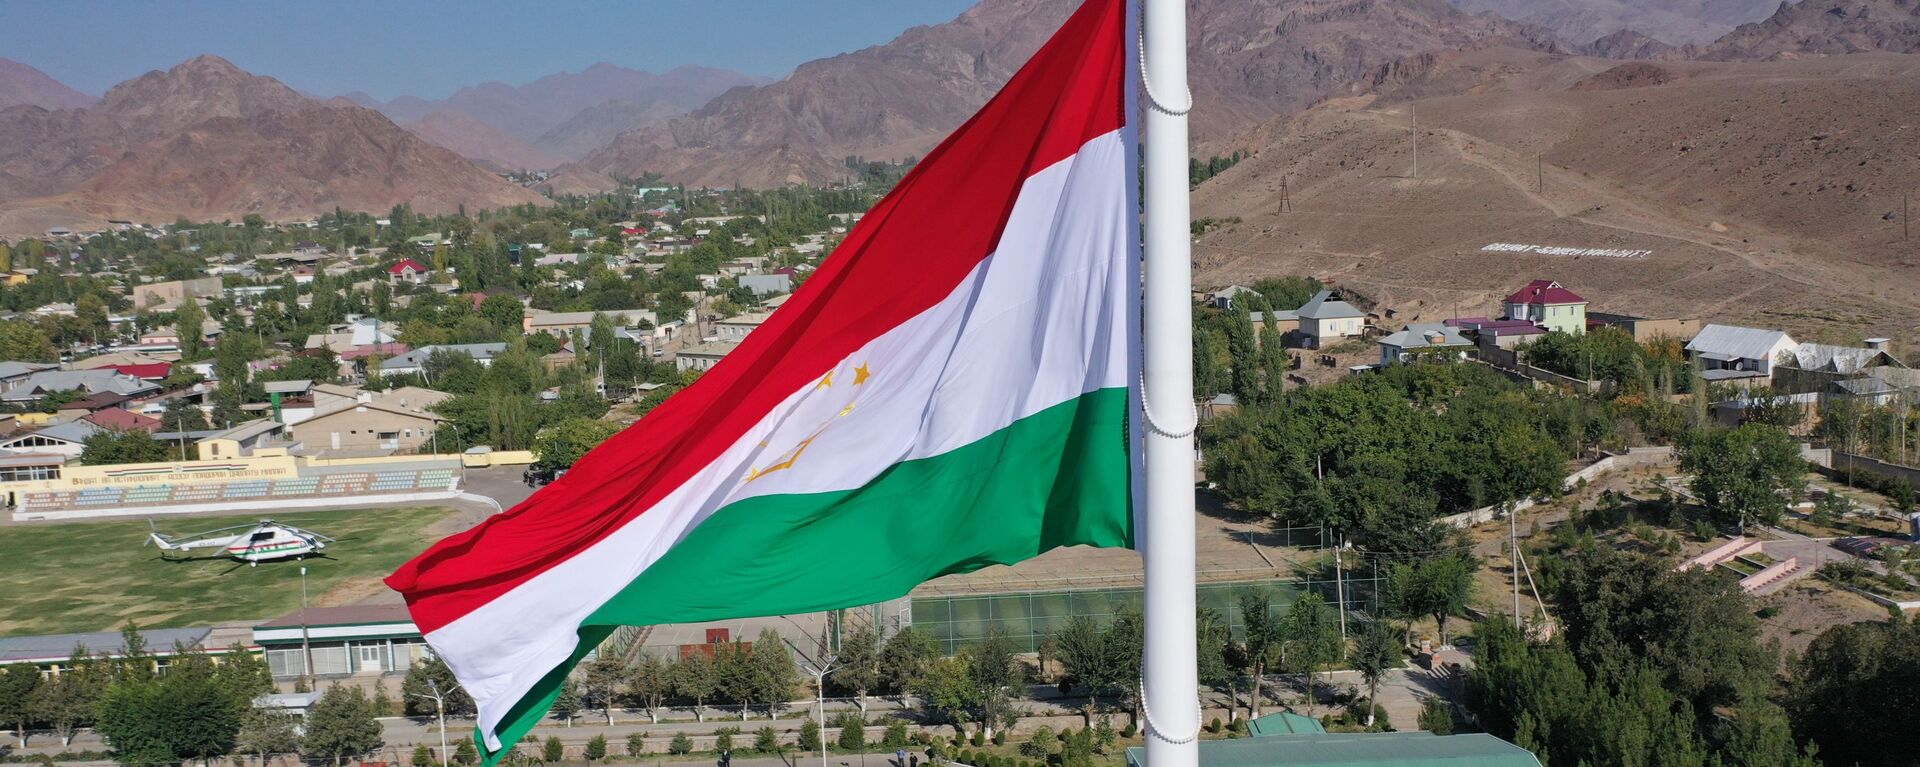 Флаг Таджикистана - Sputnik Таджикистан, 1920, 04.03.2021